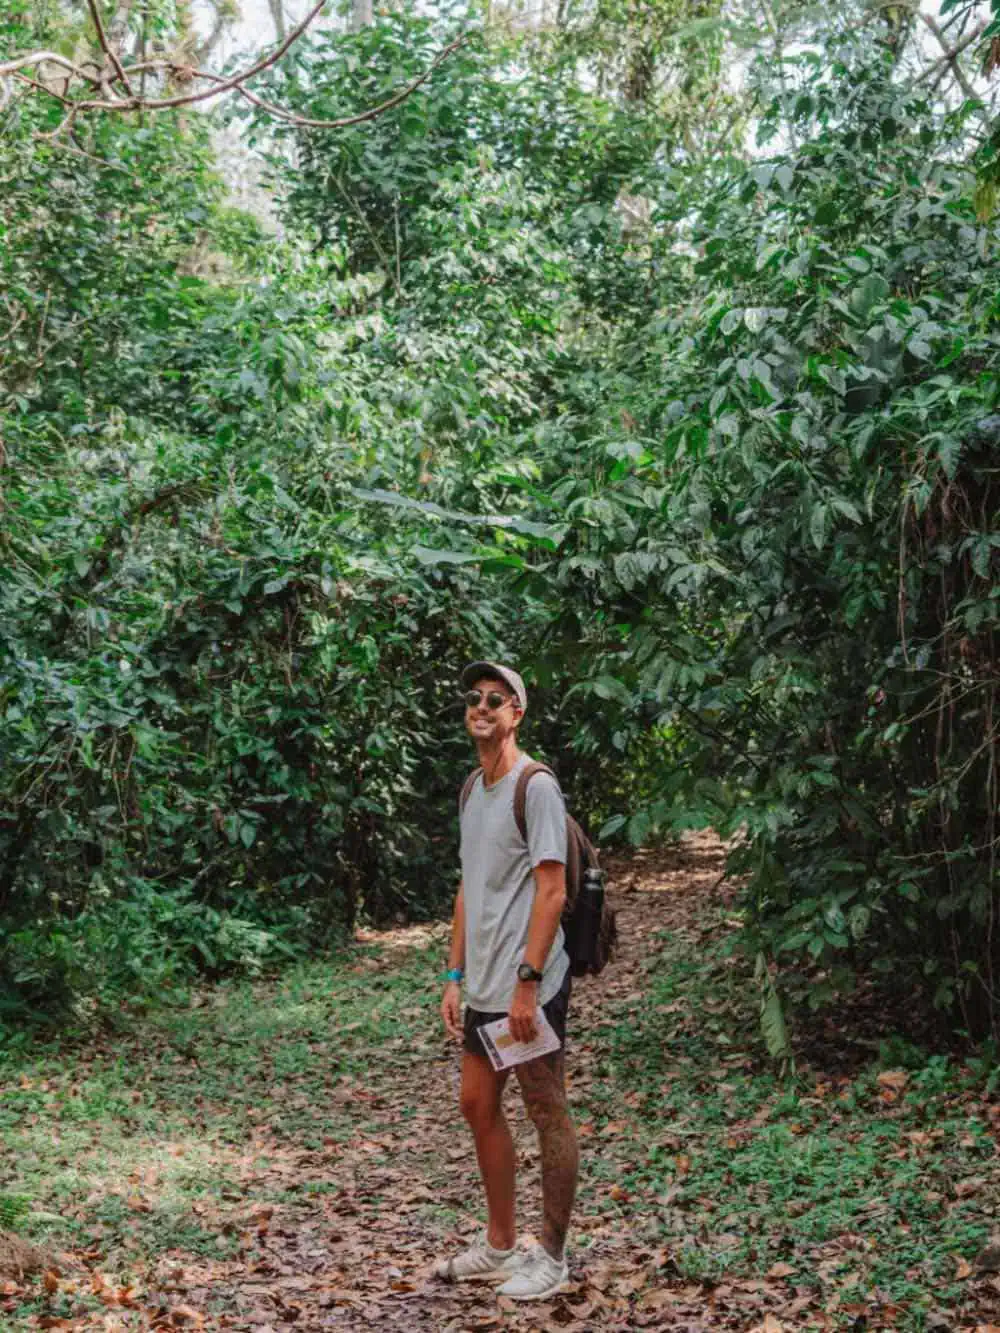 Man enjoying some rainforest hiking.